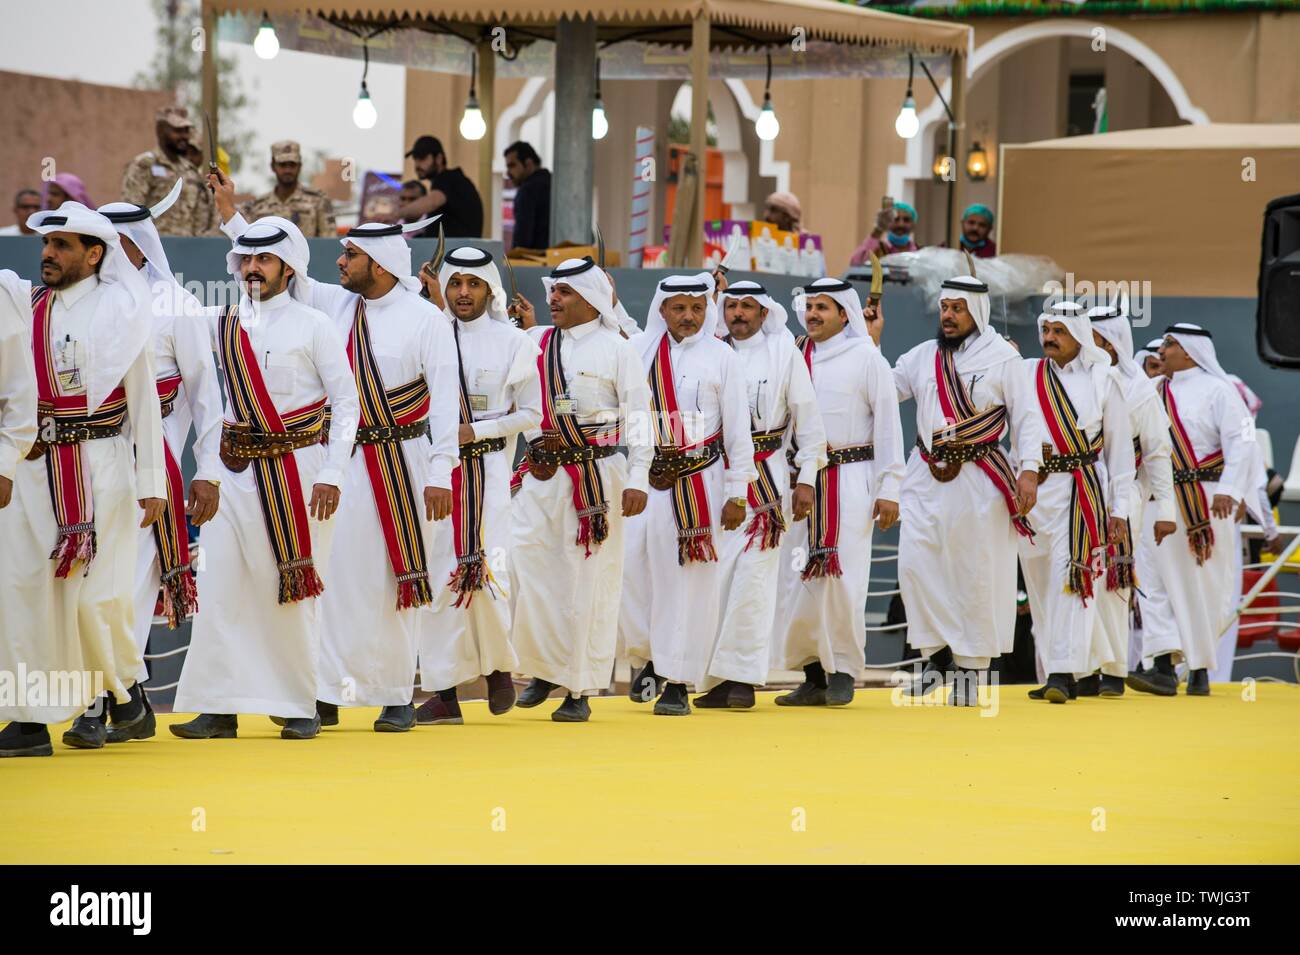 Vestito tradizionale locale di uomini ballare al Festival Janadriyah, Riad,  in Arabia Saudita Foto stock - Alamy